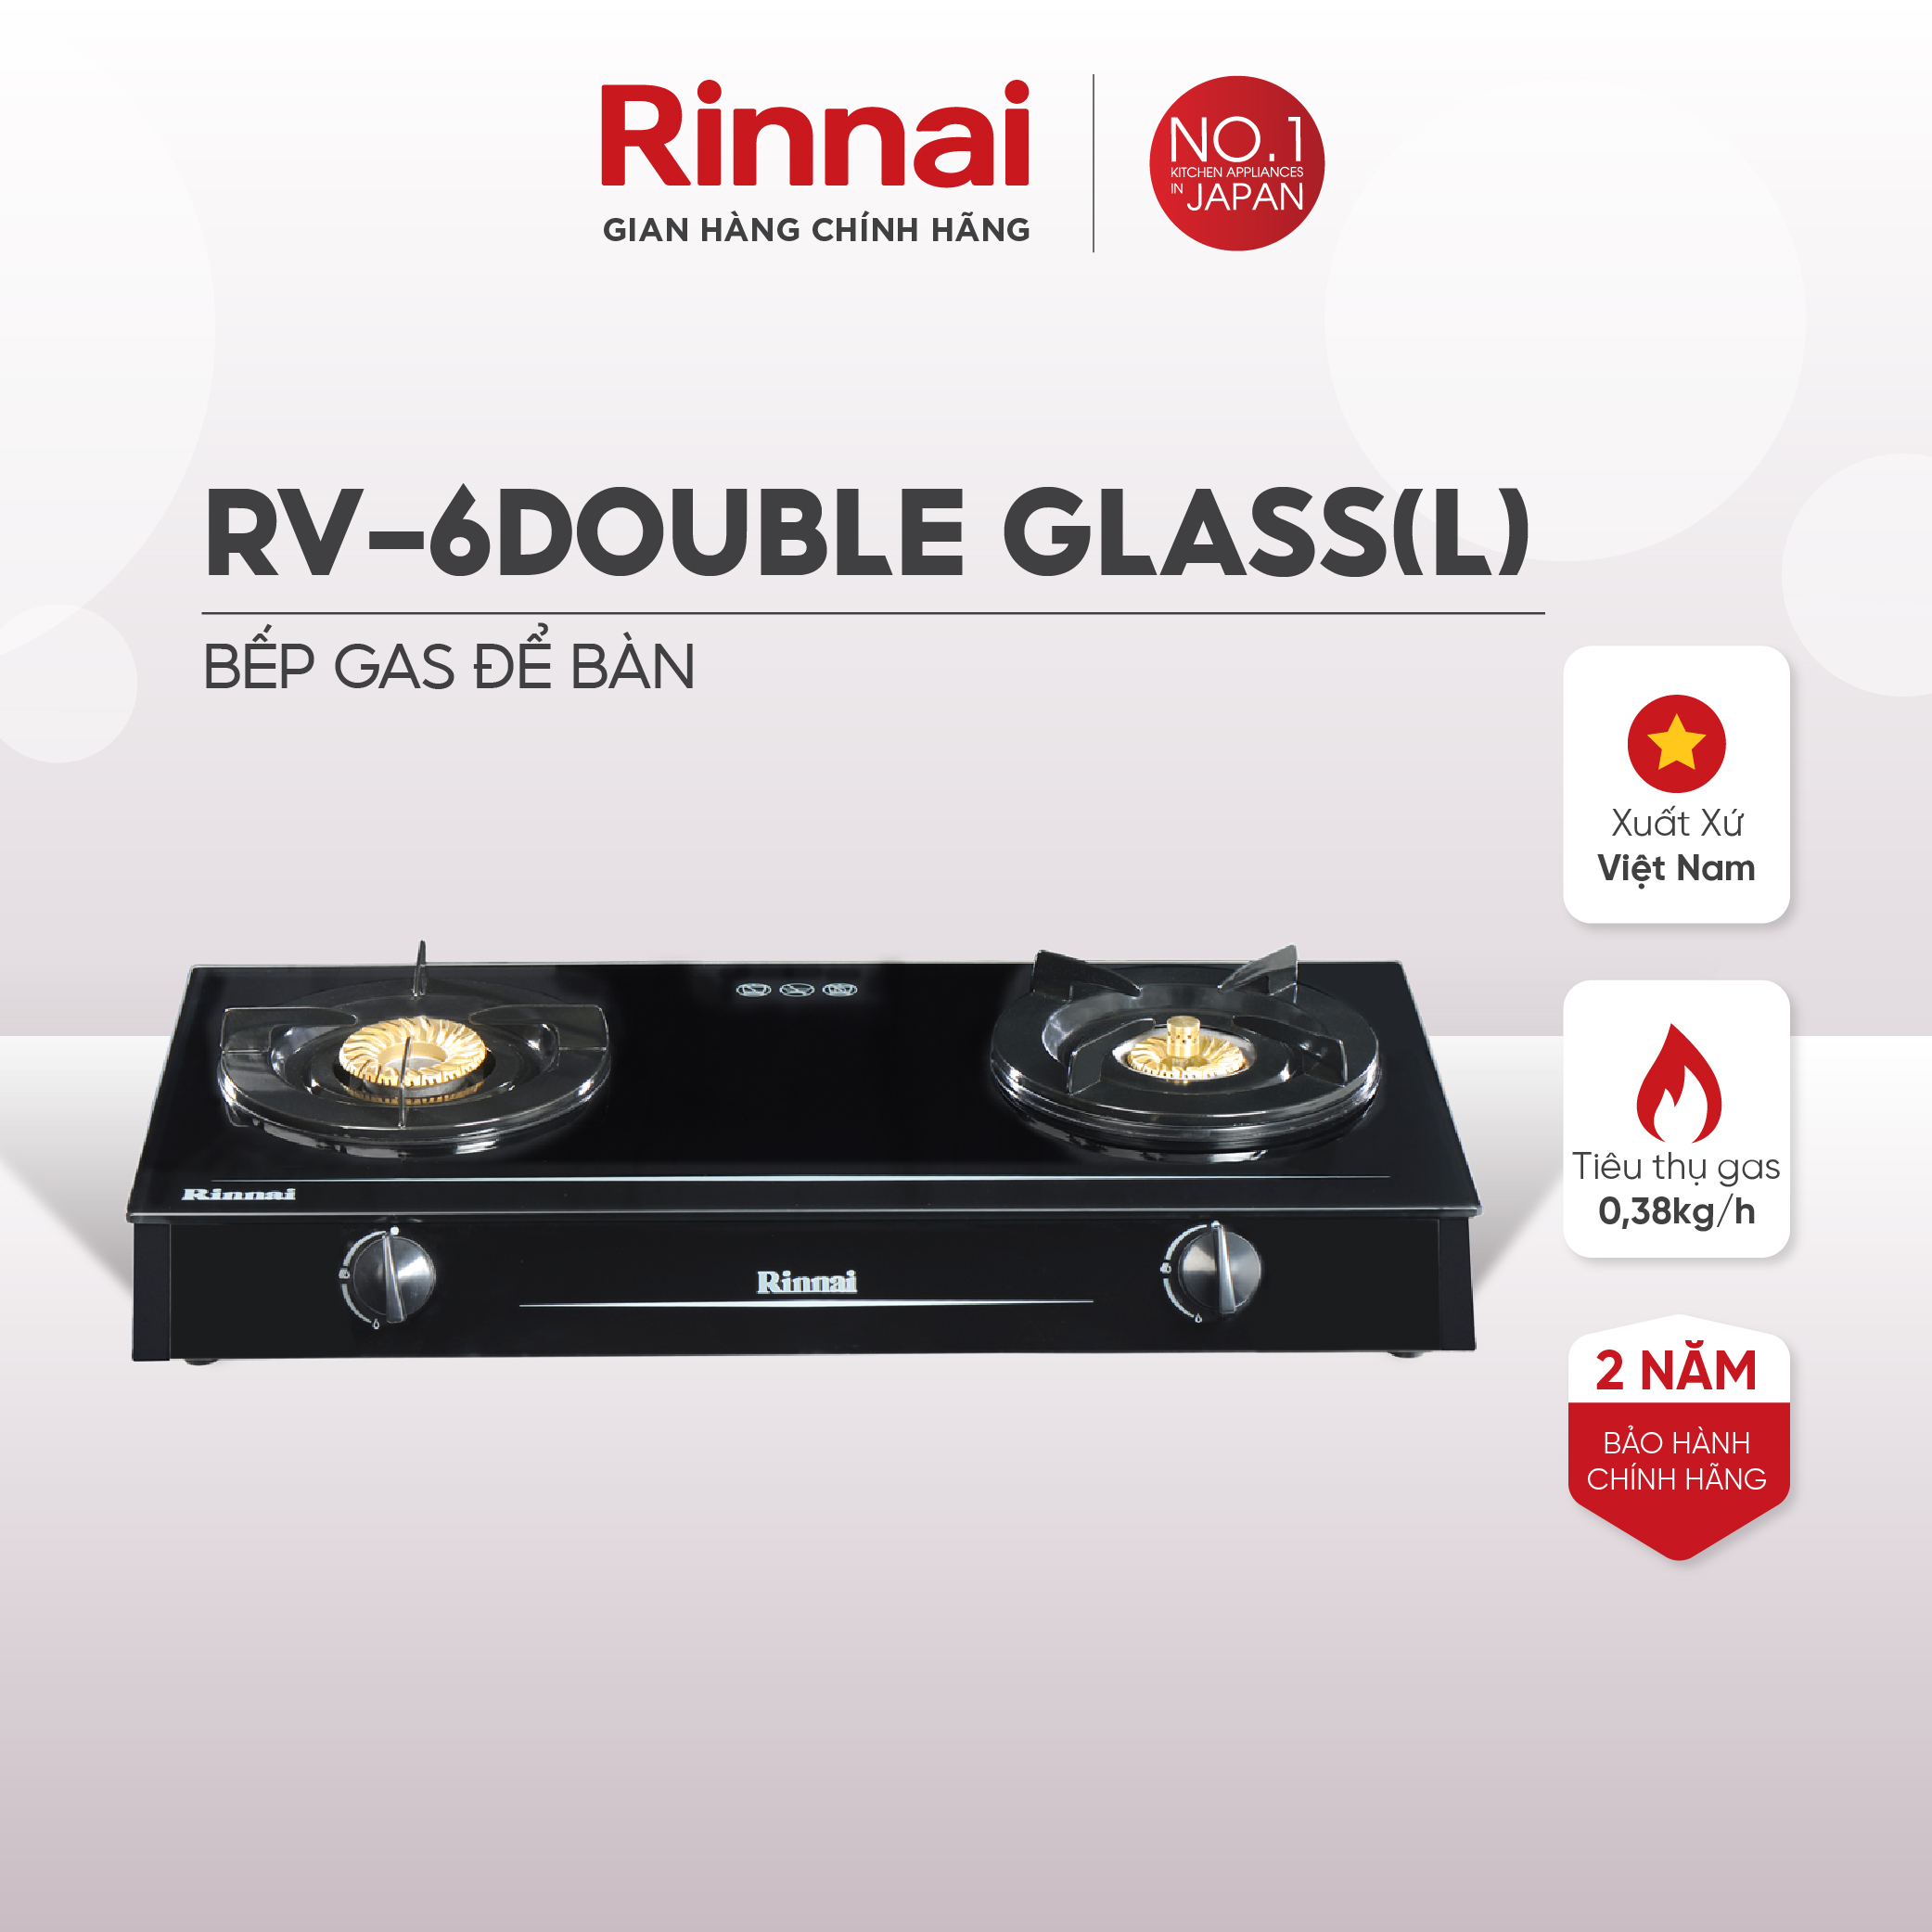 Bếp gas dương Rinnai RV-6Double Glass(L) mặt bếp kính và kiềng bếp men - Hàng chính hãng.